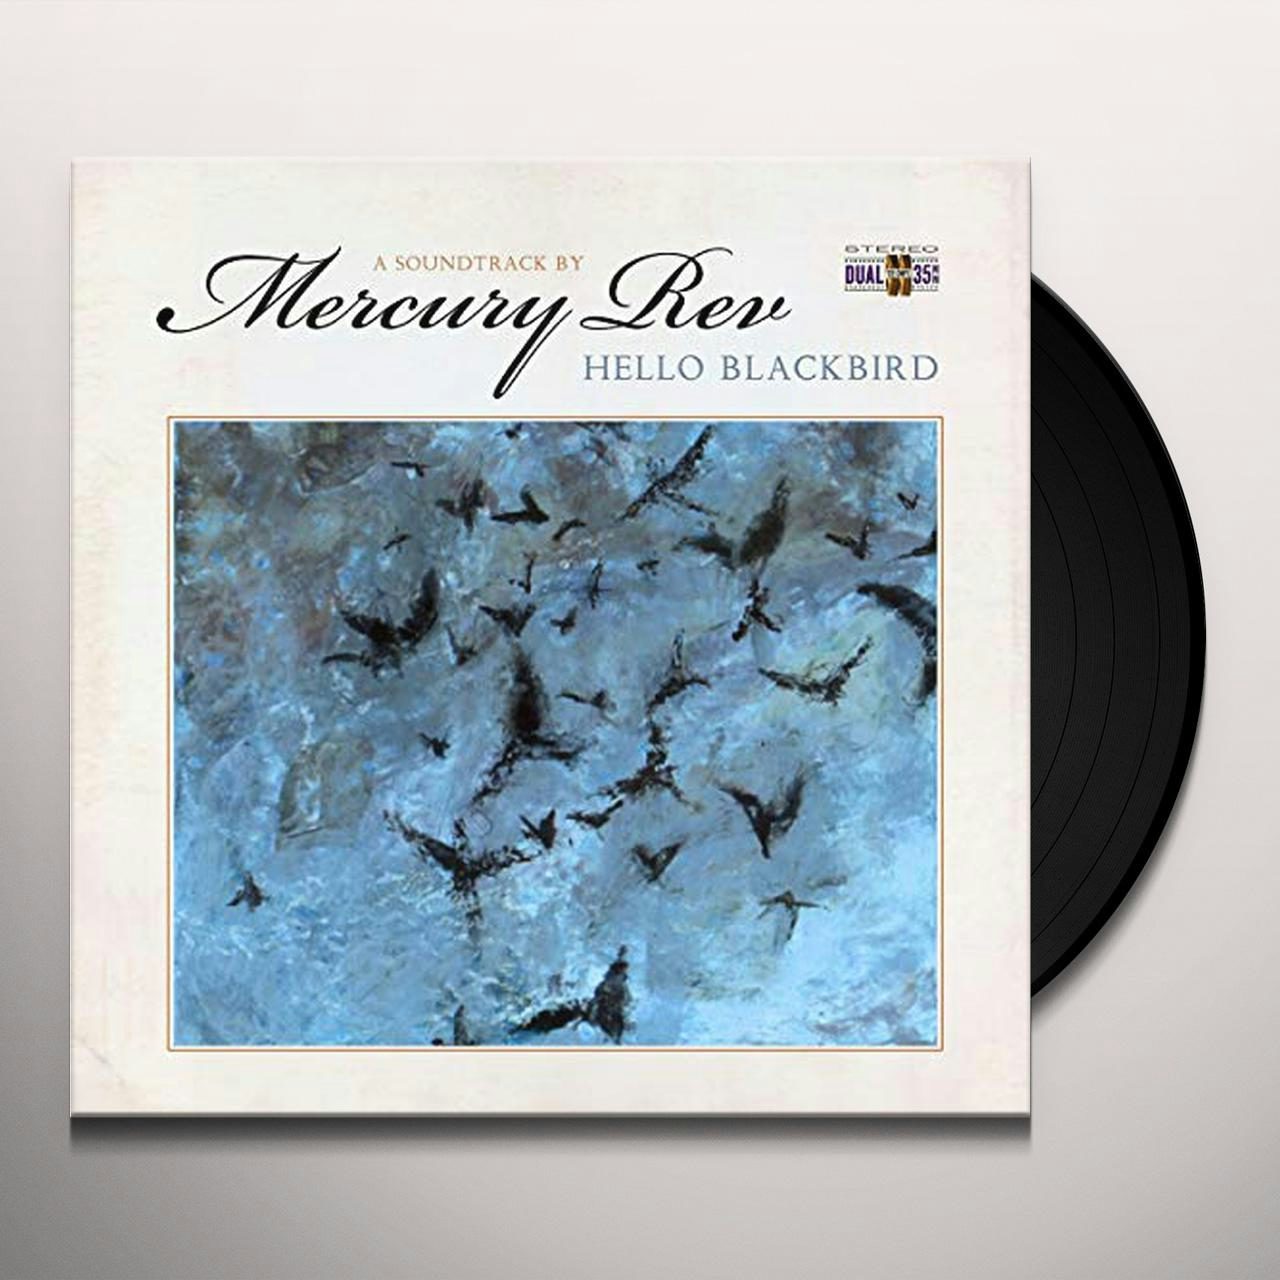 Deserter's Songs Vinyl Record - Mercury Rev